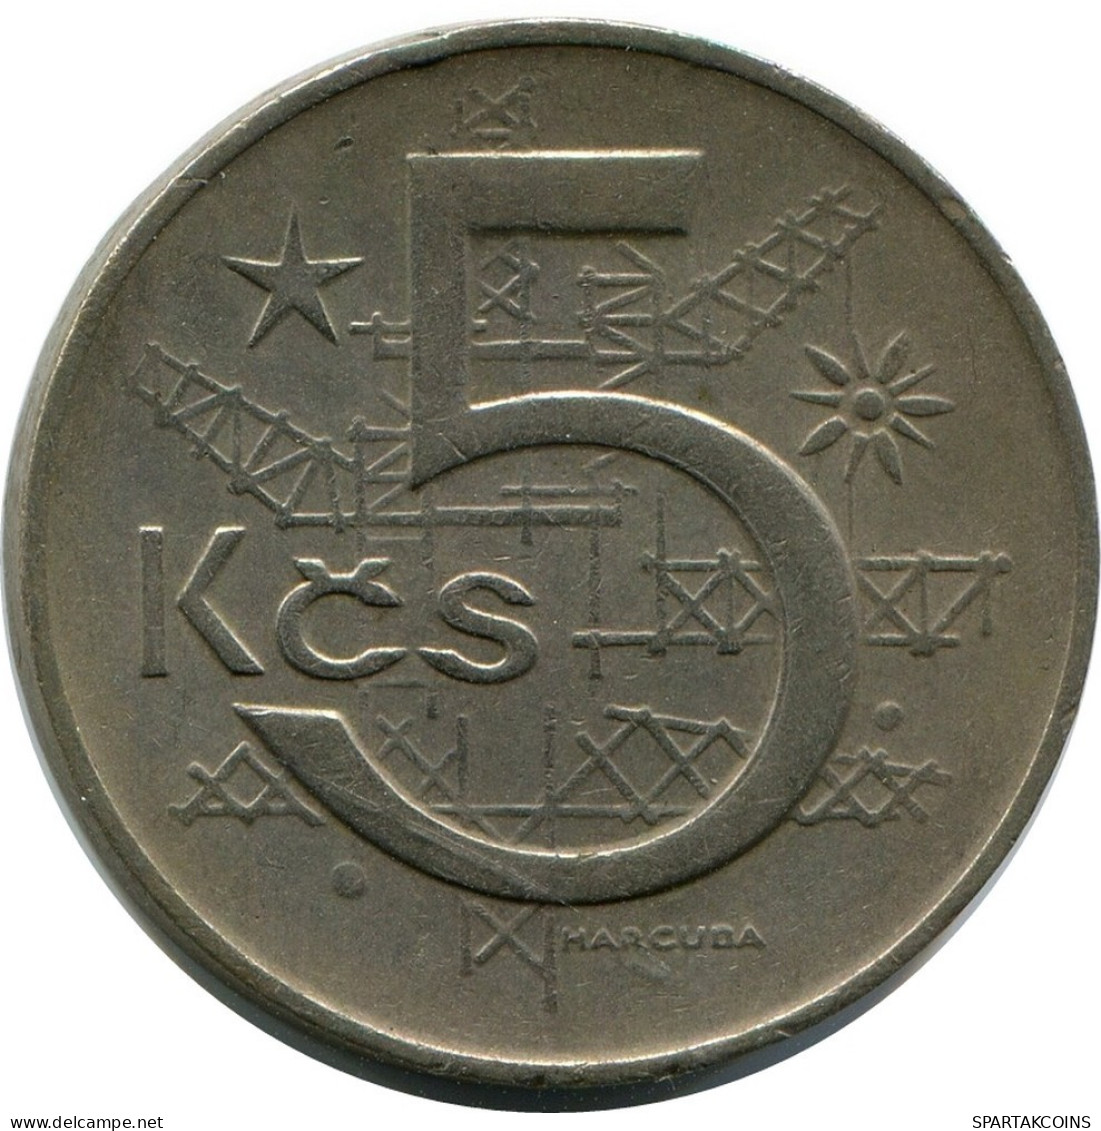 5 KORUN 1969 TSCHECHOSLOWAKEI CZECHOSLOWAKEI SLOVAKIA Münze #AR232.D.A - Tschechoslowakei